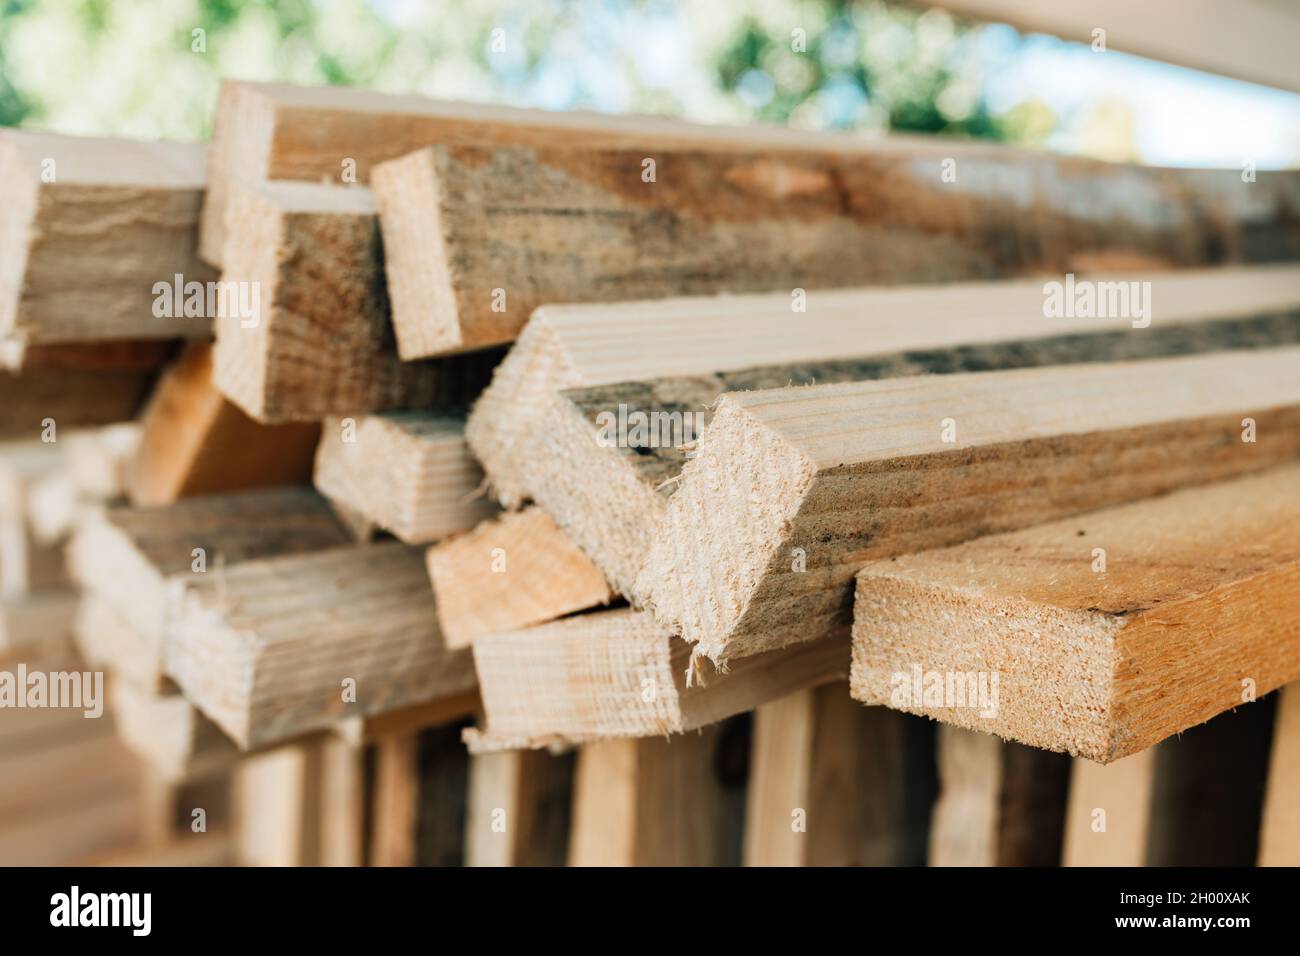 Tablas de madera rústicas apiladas como material de construcción, enfoque selectivo Foto de stock